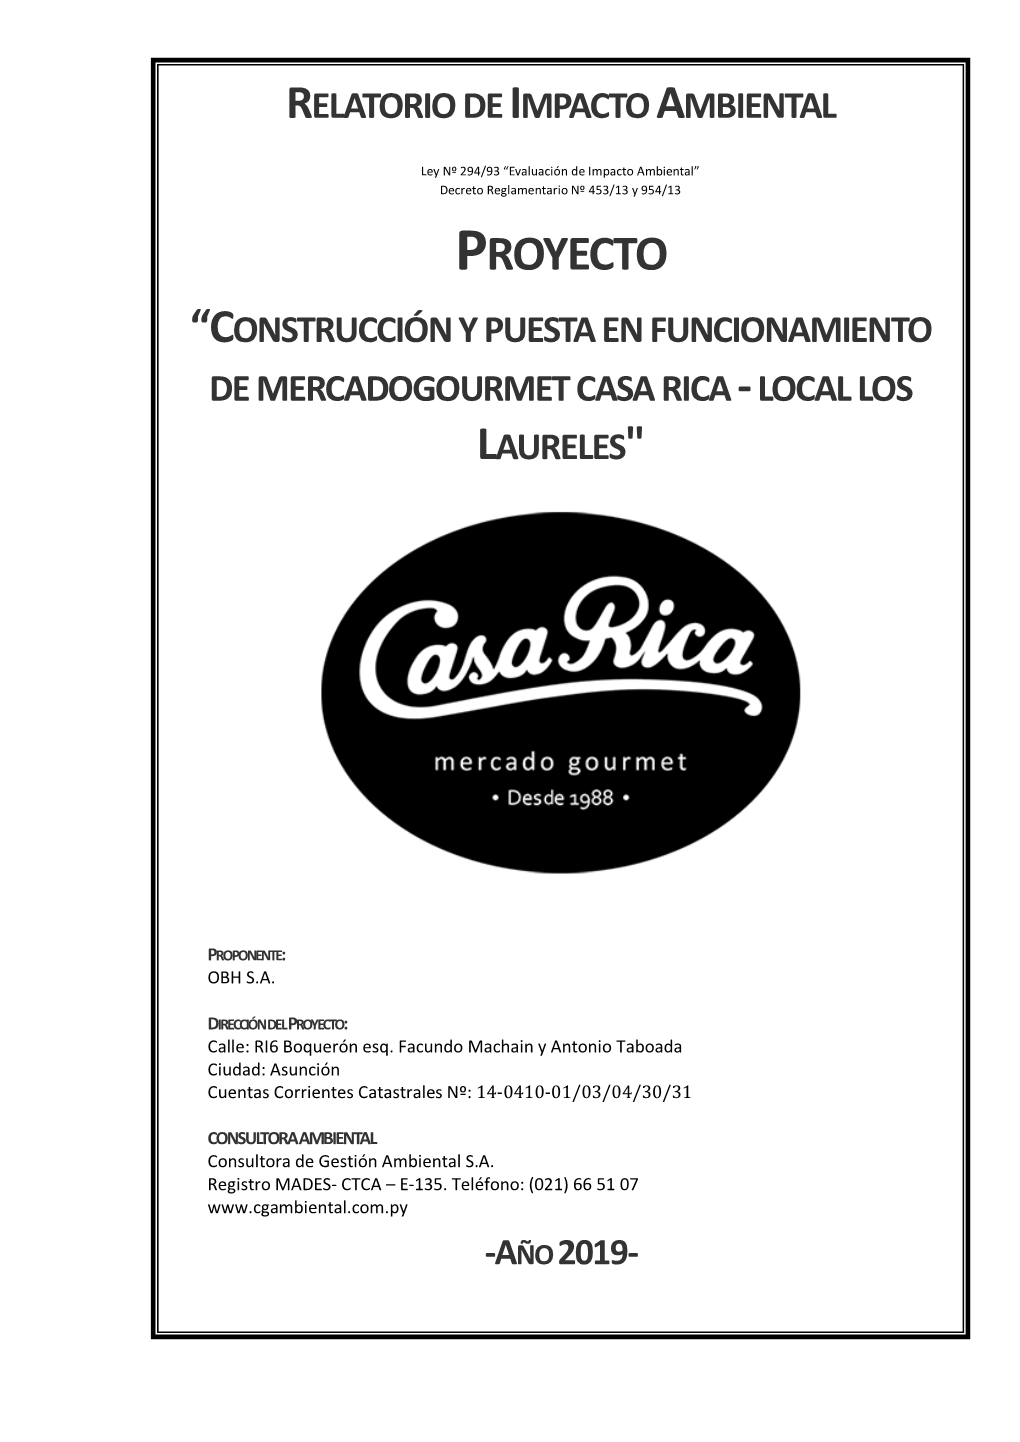 Proyecto “Construcción Y Puesta En Funcionamiento De Mercadogourmet Casa Rica - Local Los Laureles"